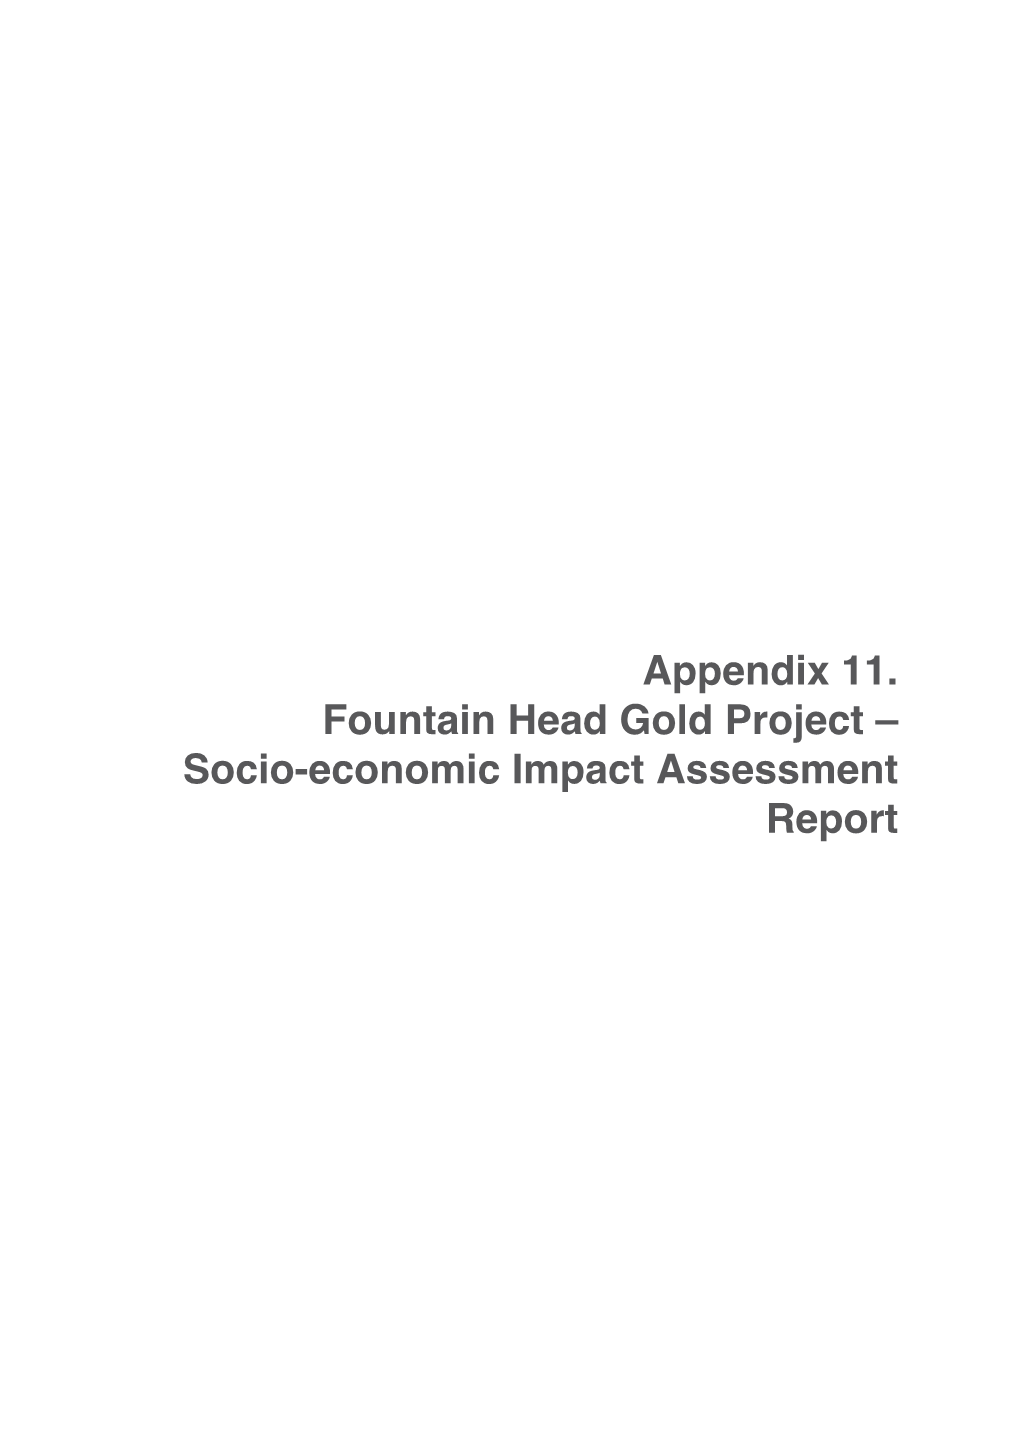 Socio-Economic Impact Assessment Report